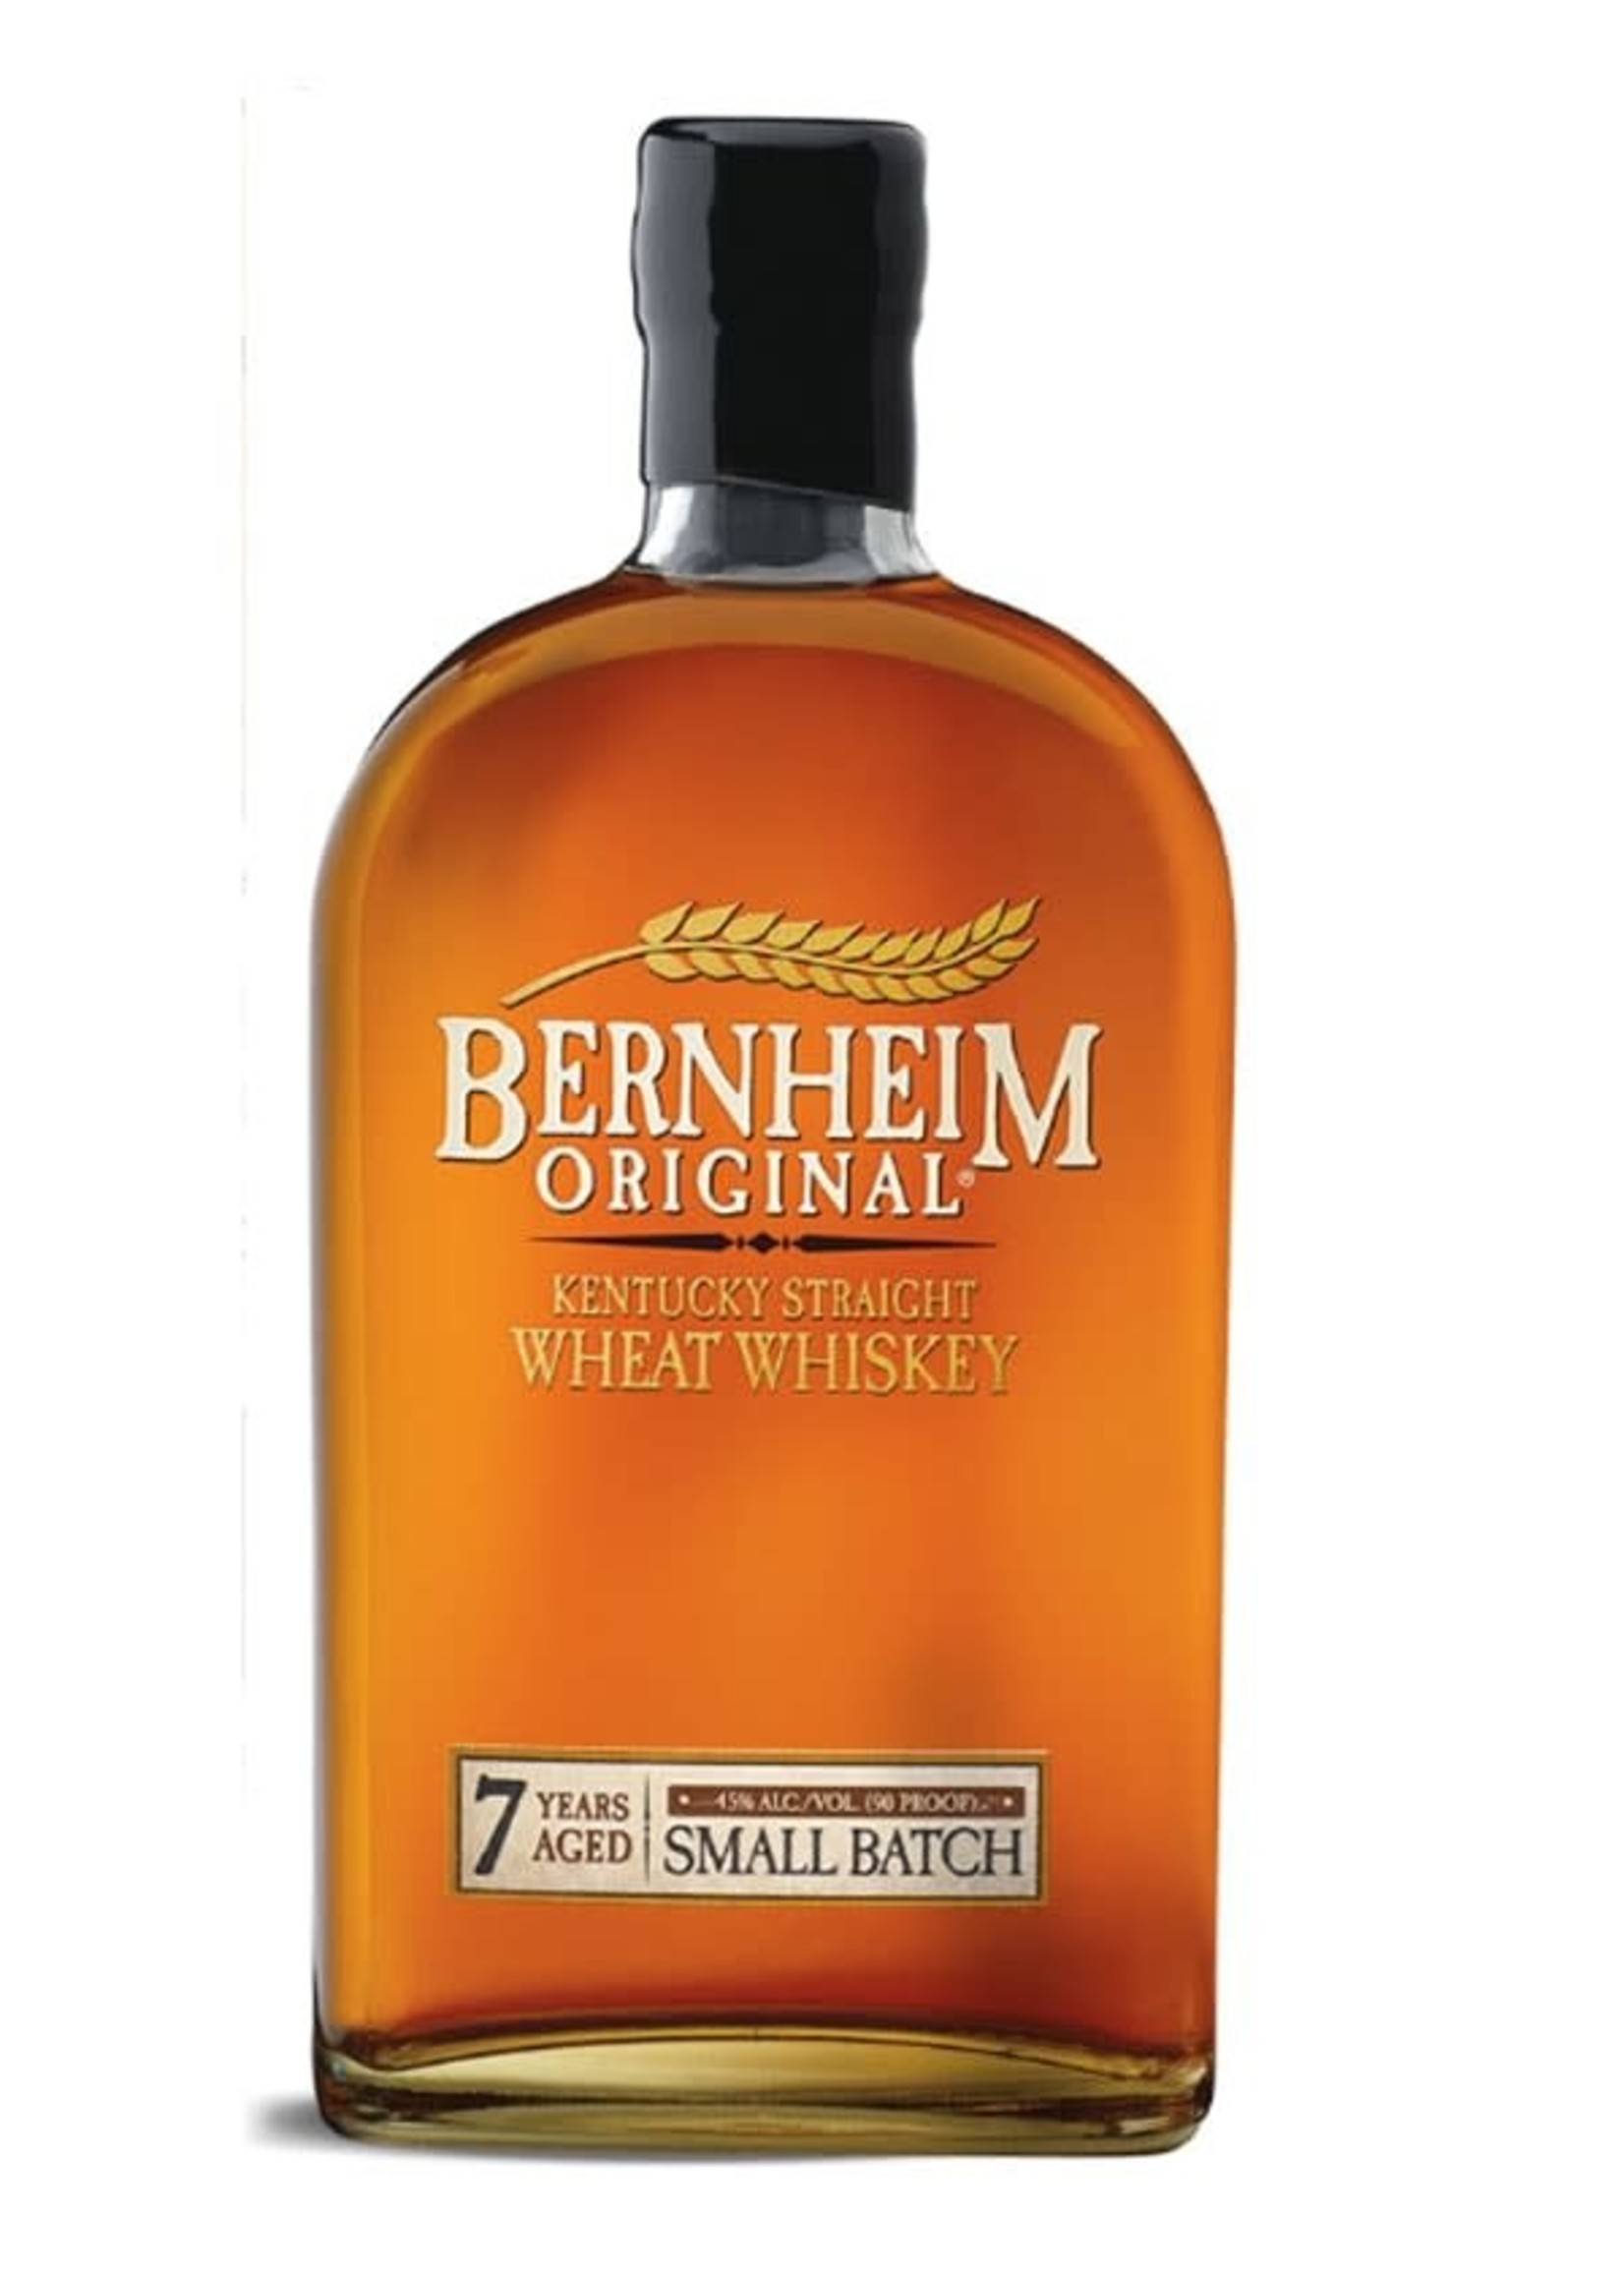 Hevane Hill Bernheim Wheat Whiskey